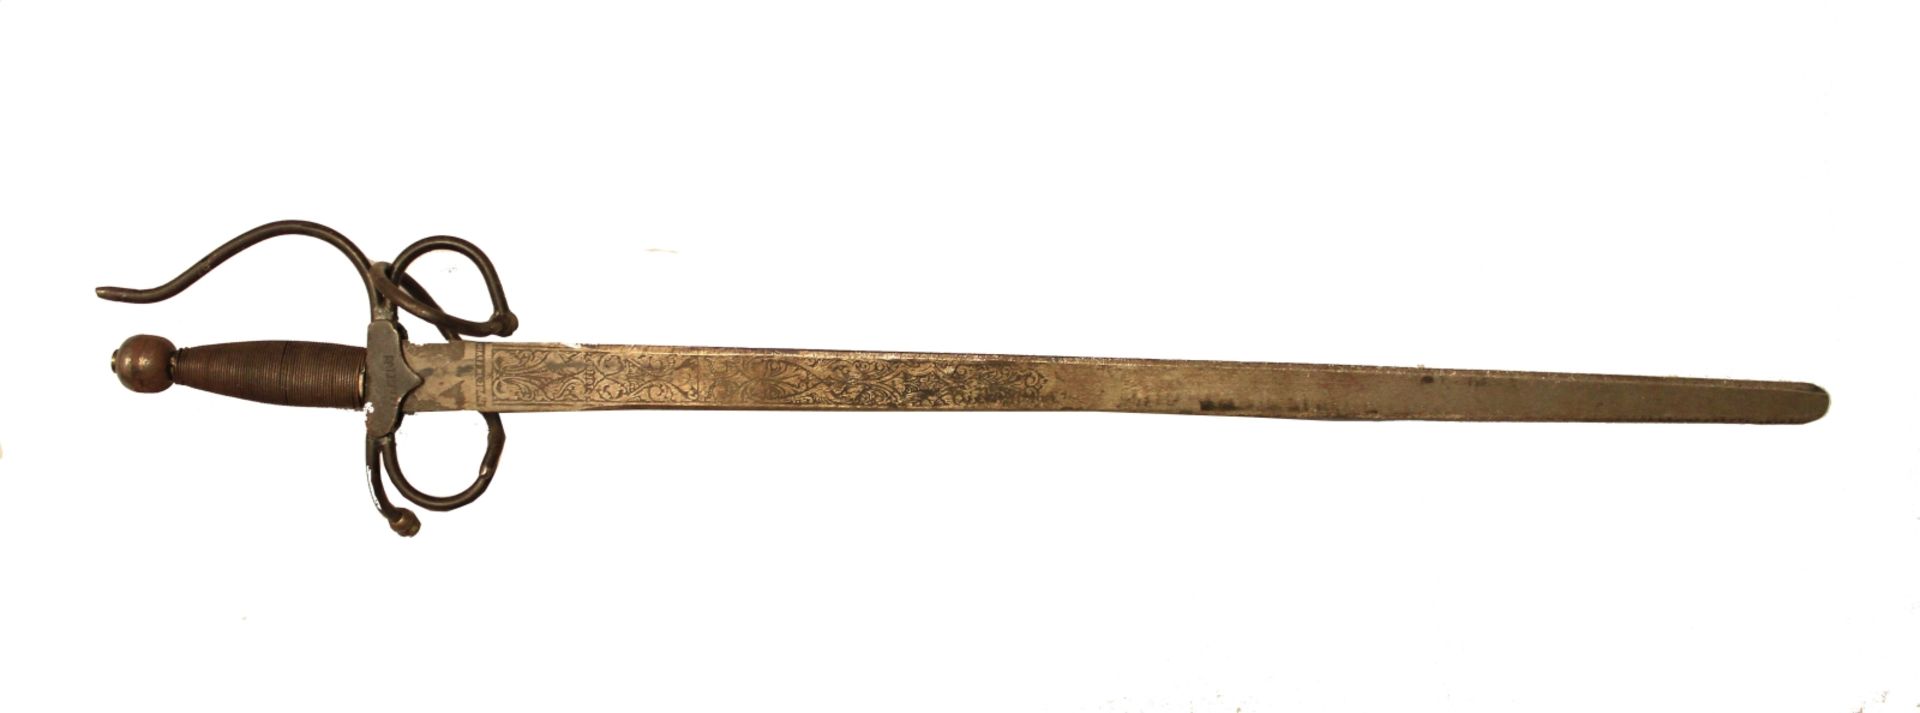 Schwert - im Stil des 17.Jahrhunderts Spanien 20.Jahrhundert, bez. Toledo, Griff mit Eisengeflecht